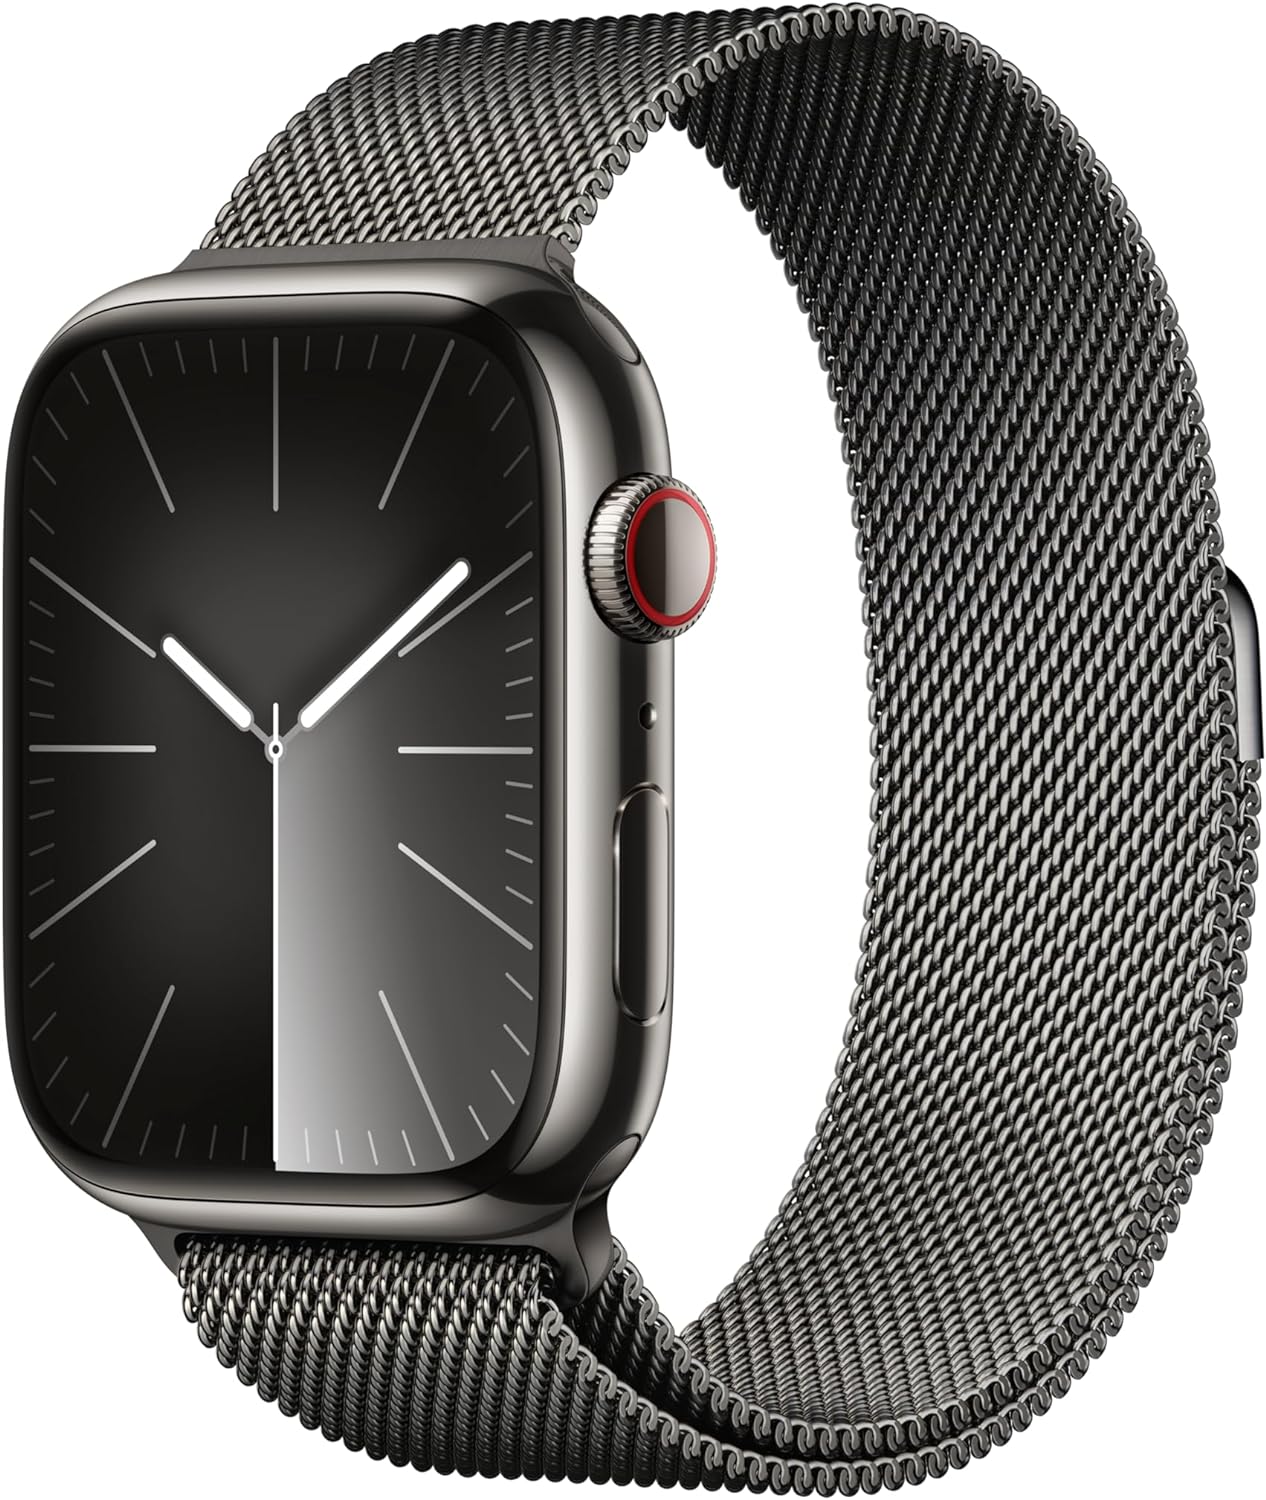 https://geekywrist.com/wp-content/uploads/2023/09/Apple-Watch-Series-9-Stainless-steel-45mm.jpg